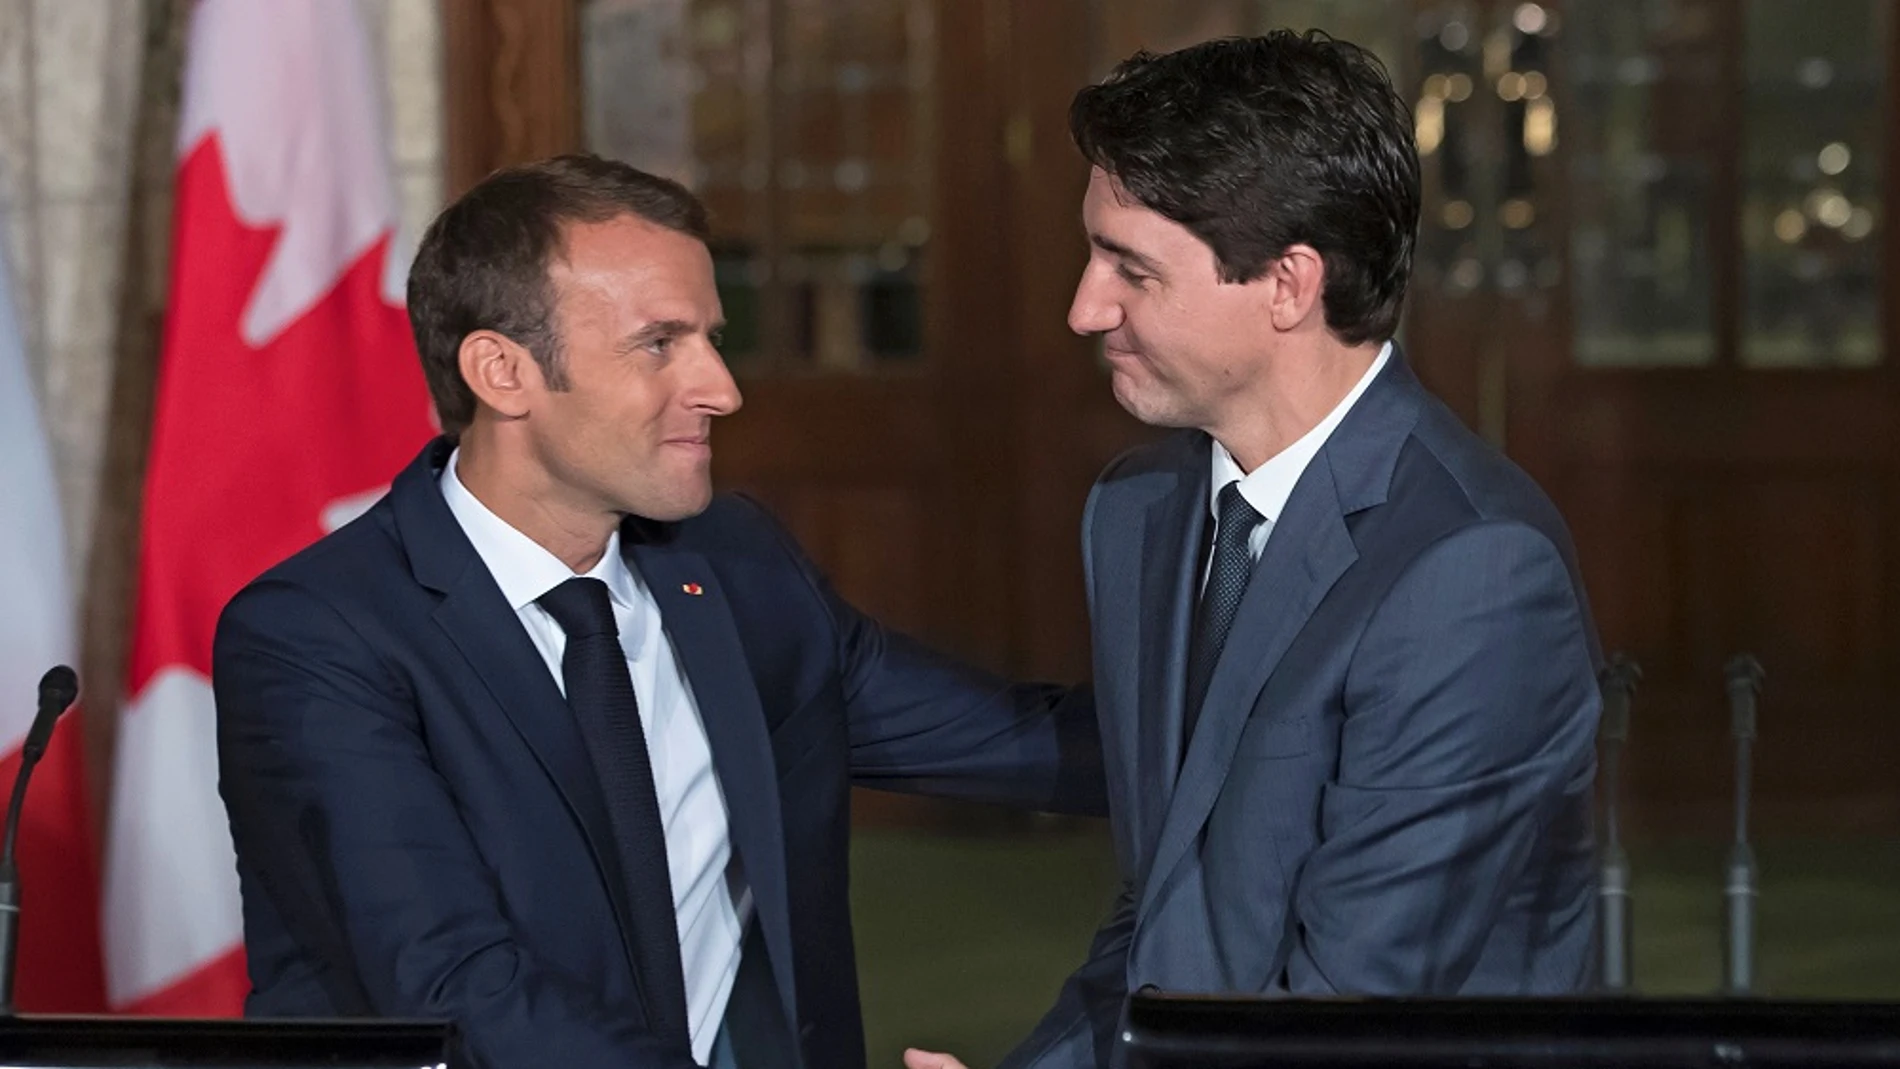 El primer ministro canadiense, Justin Trudeau, saluda a su homólogo francés, Emmanuel Macron